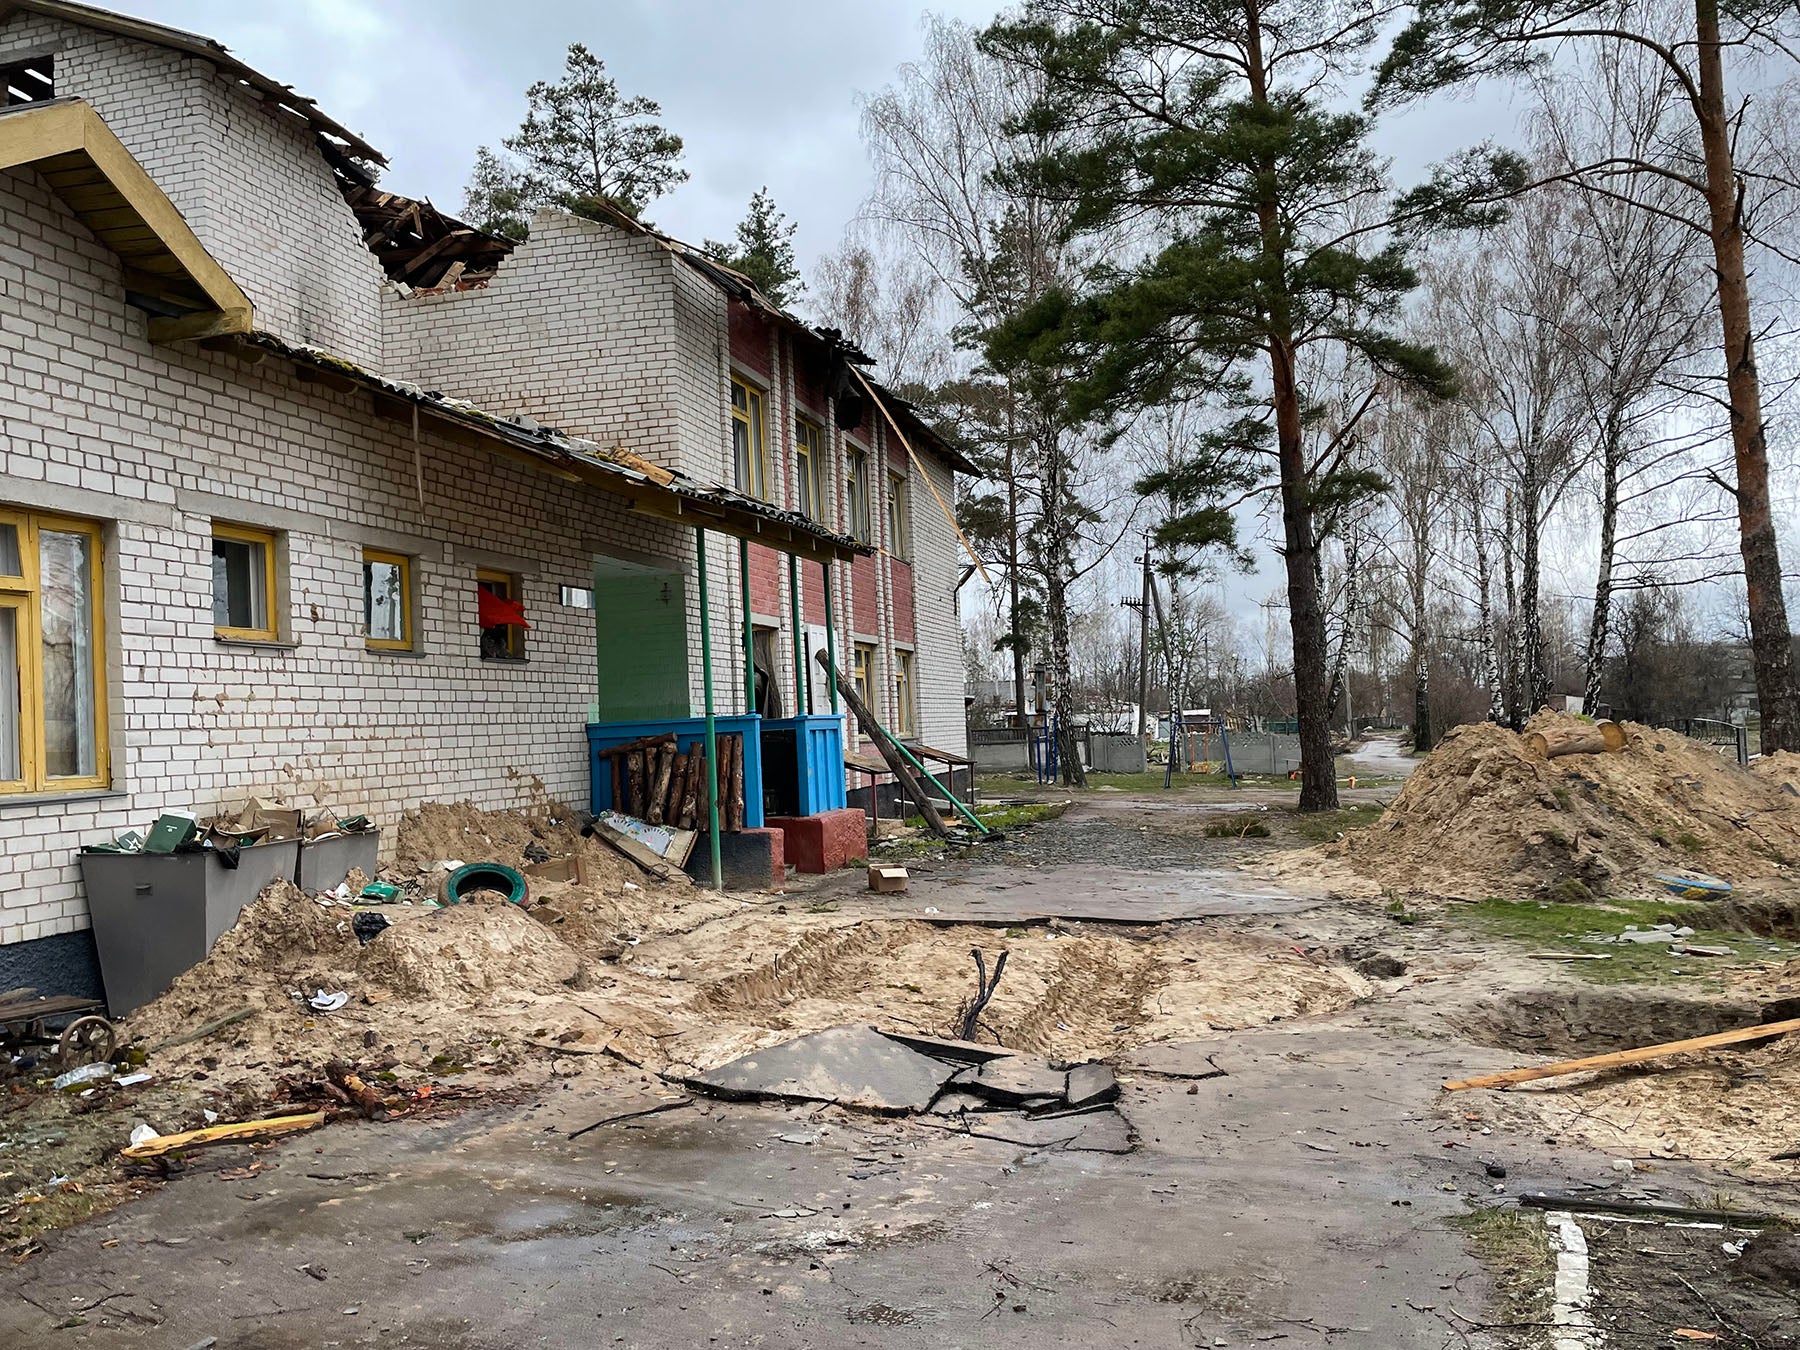 Gruben im Schulhof von Yahidne, die offensichtlich von den russischen Truppen genutzt wurden, Yahidne, 17. April 2022.